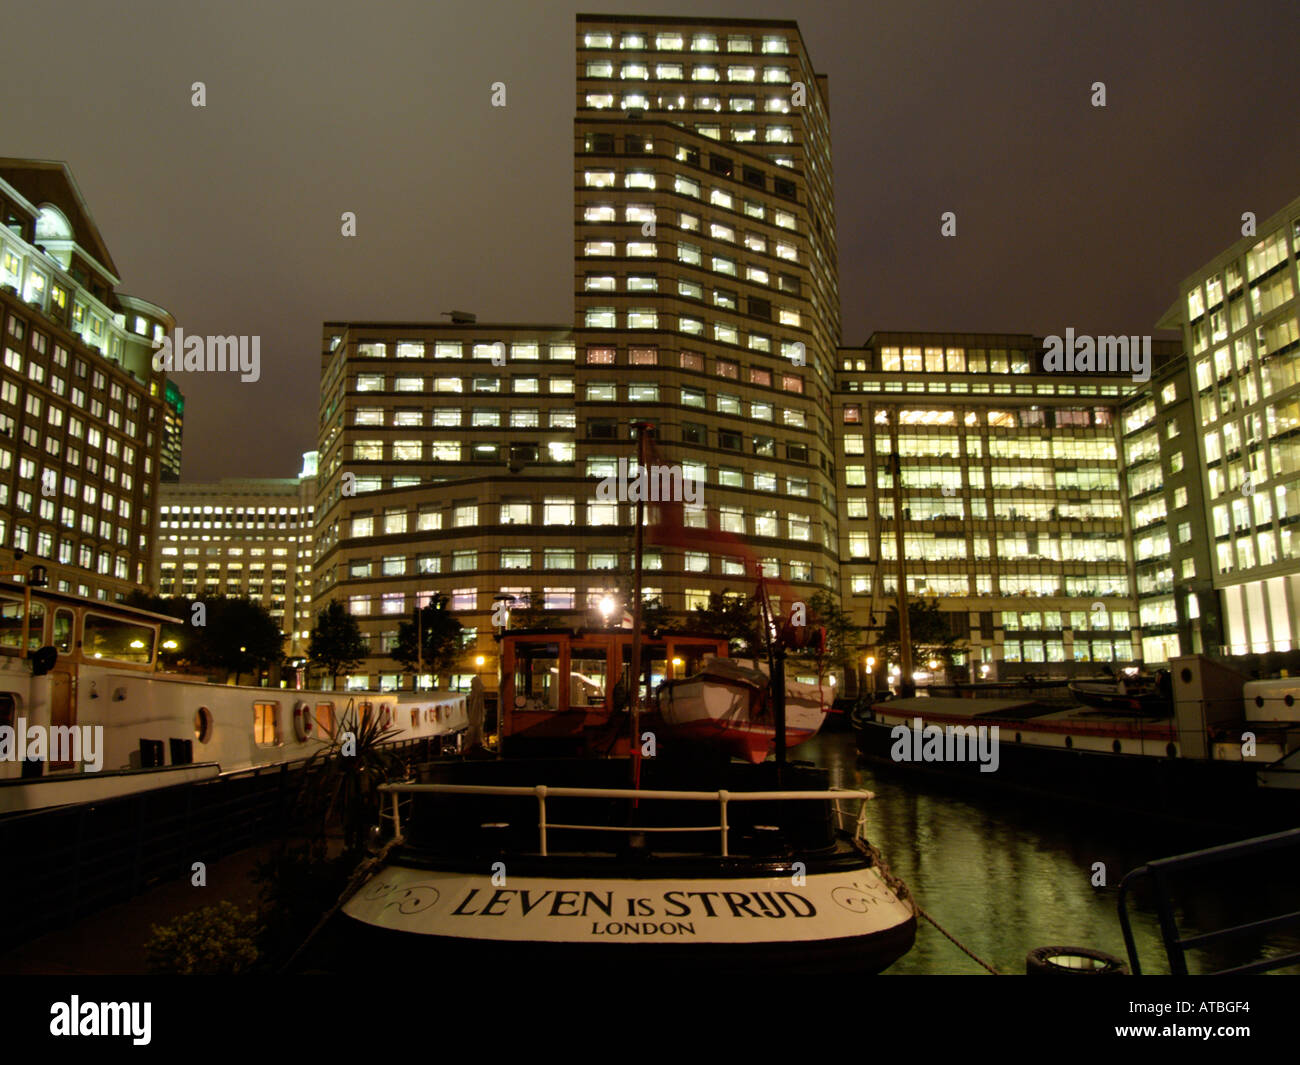 Les immeubles de bureaux et les bateaux Docklands Canary Wharf Londres UK leven is strijd signifie la vie est une lutte en langue néerlandaise Banque D'Images